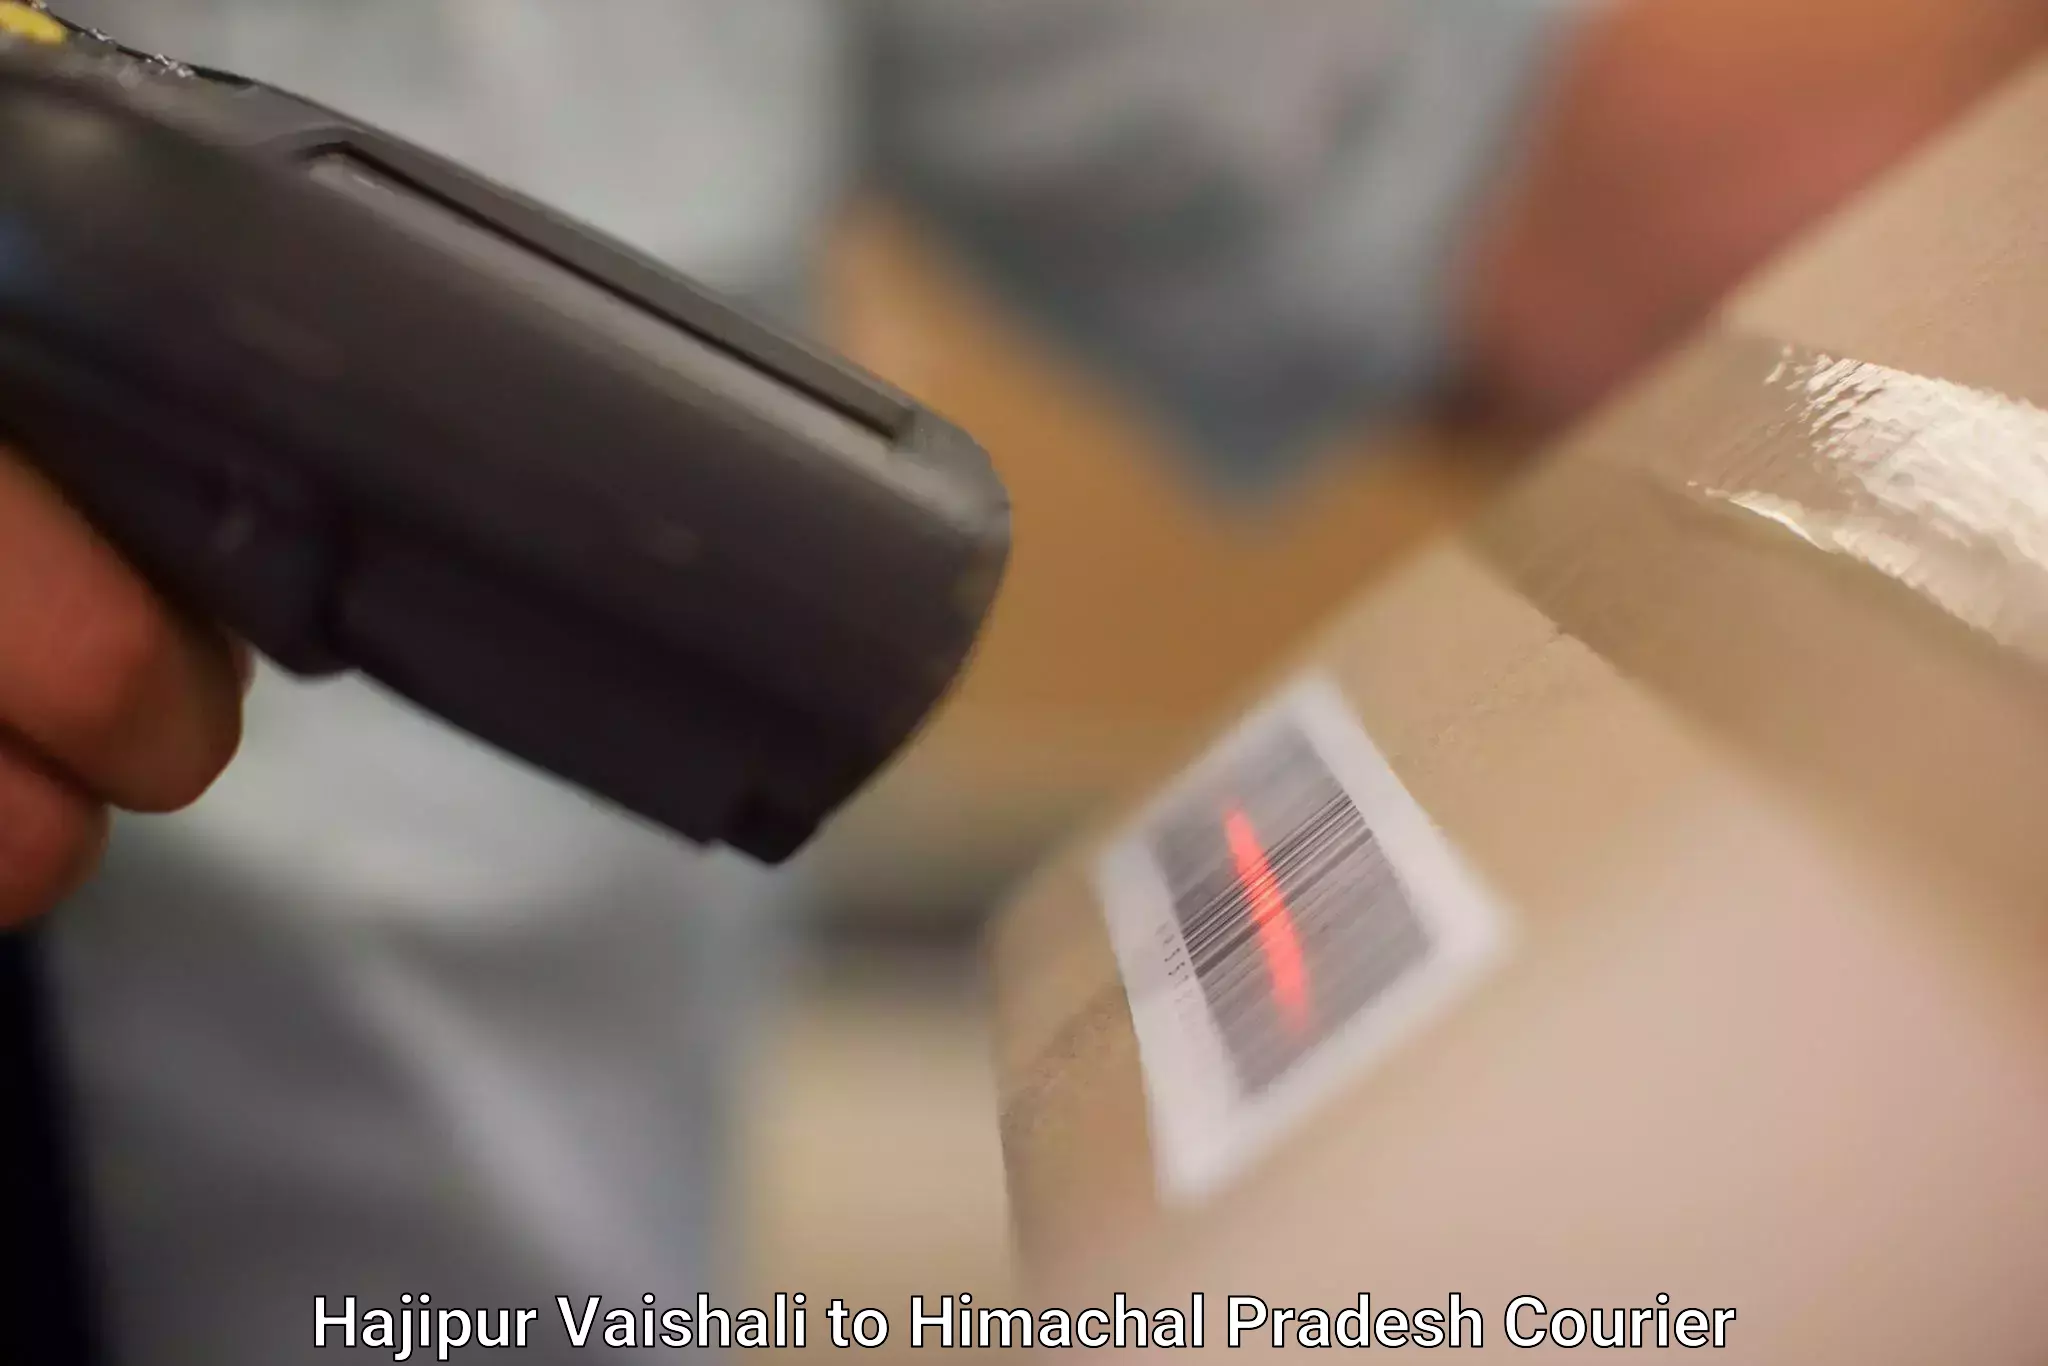 Tech-enabled shipping Hajipur Vaishali to Amb Una